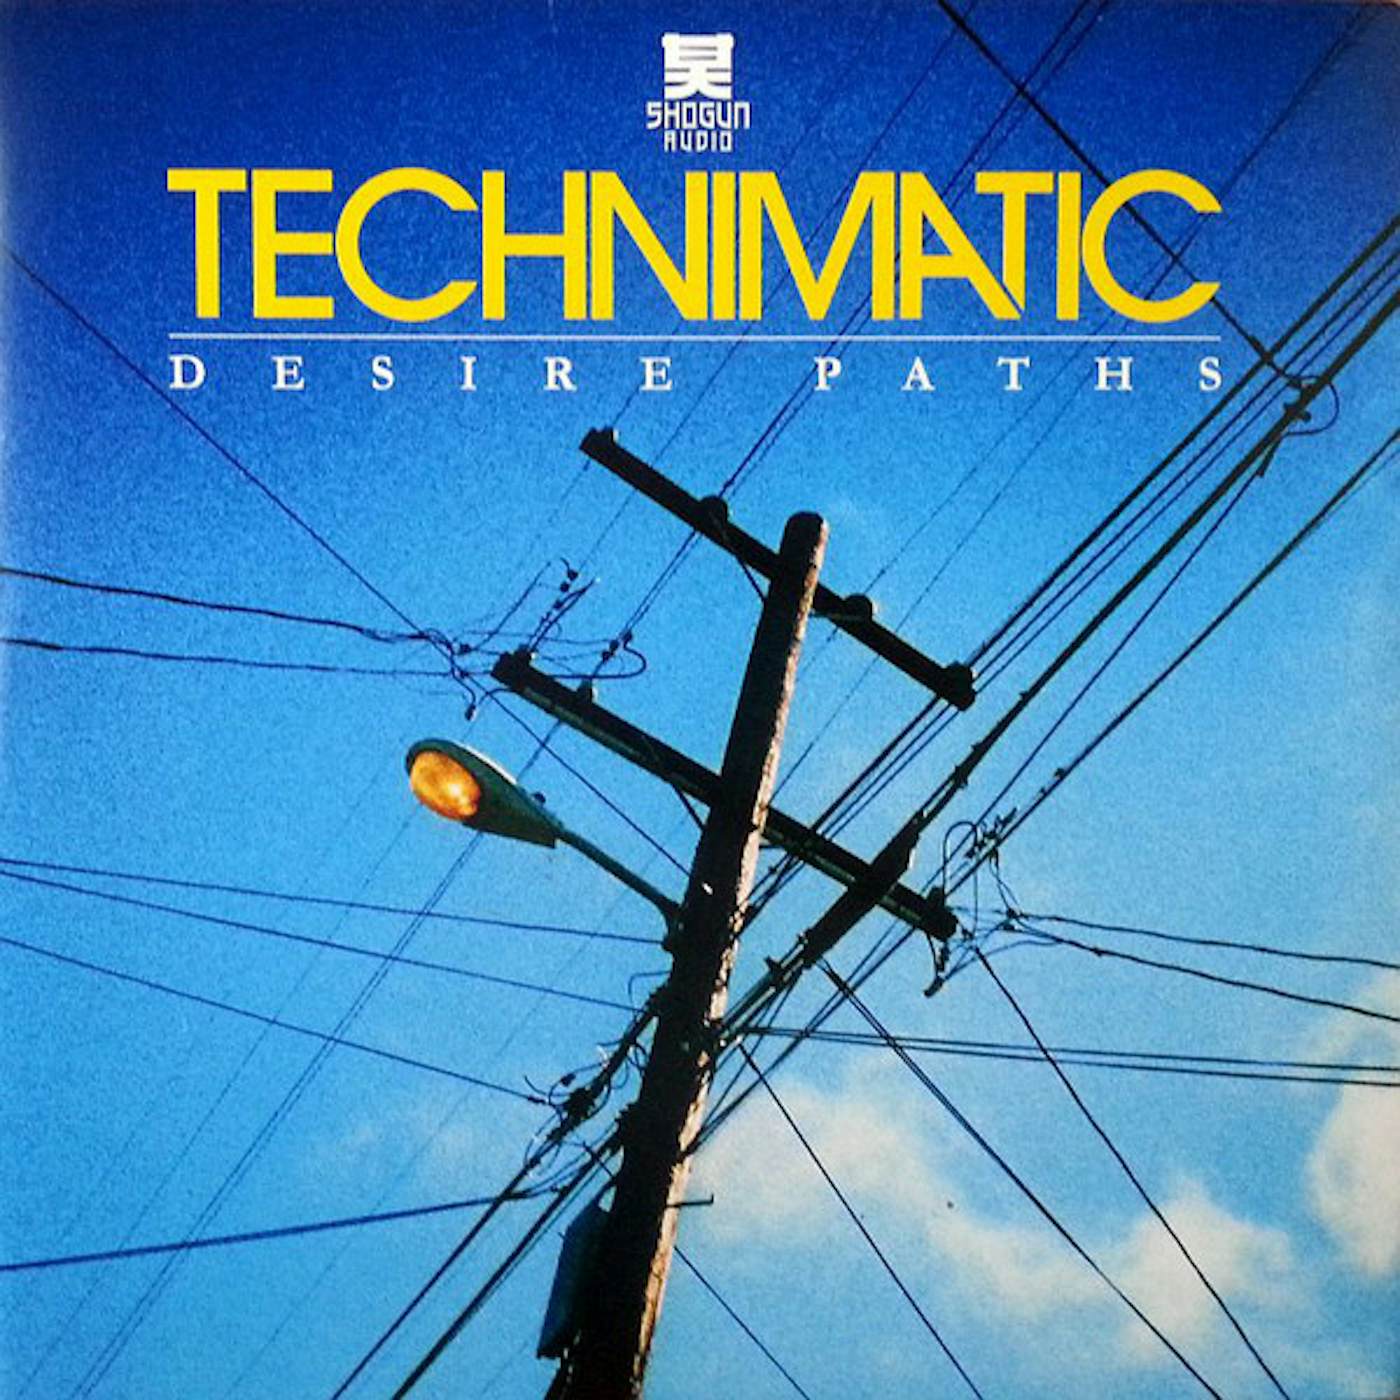 Technimatic Desire Paths Vinyl Record